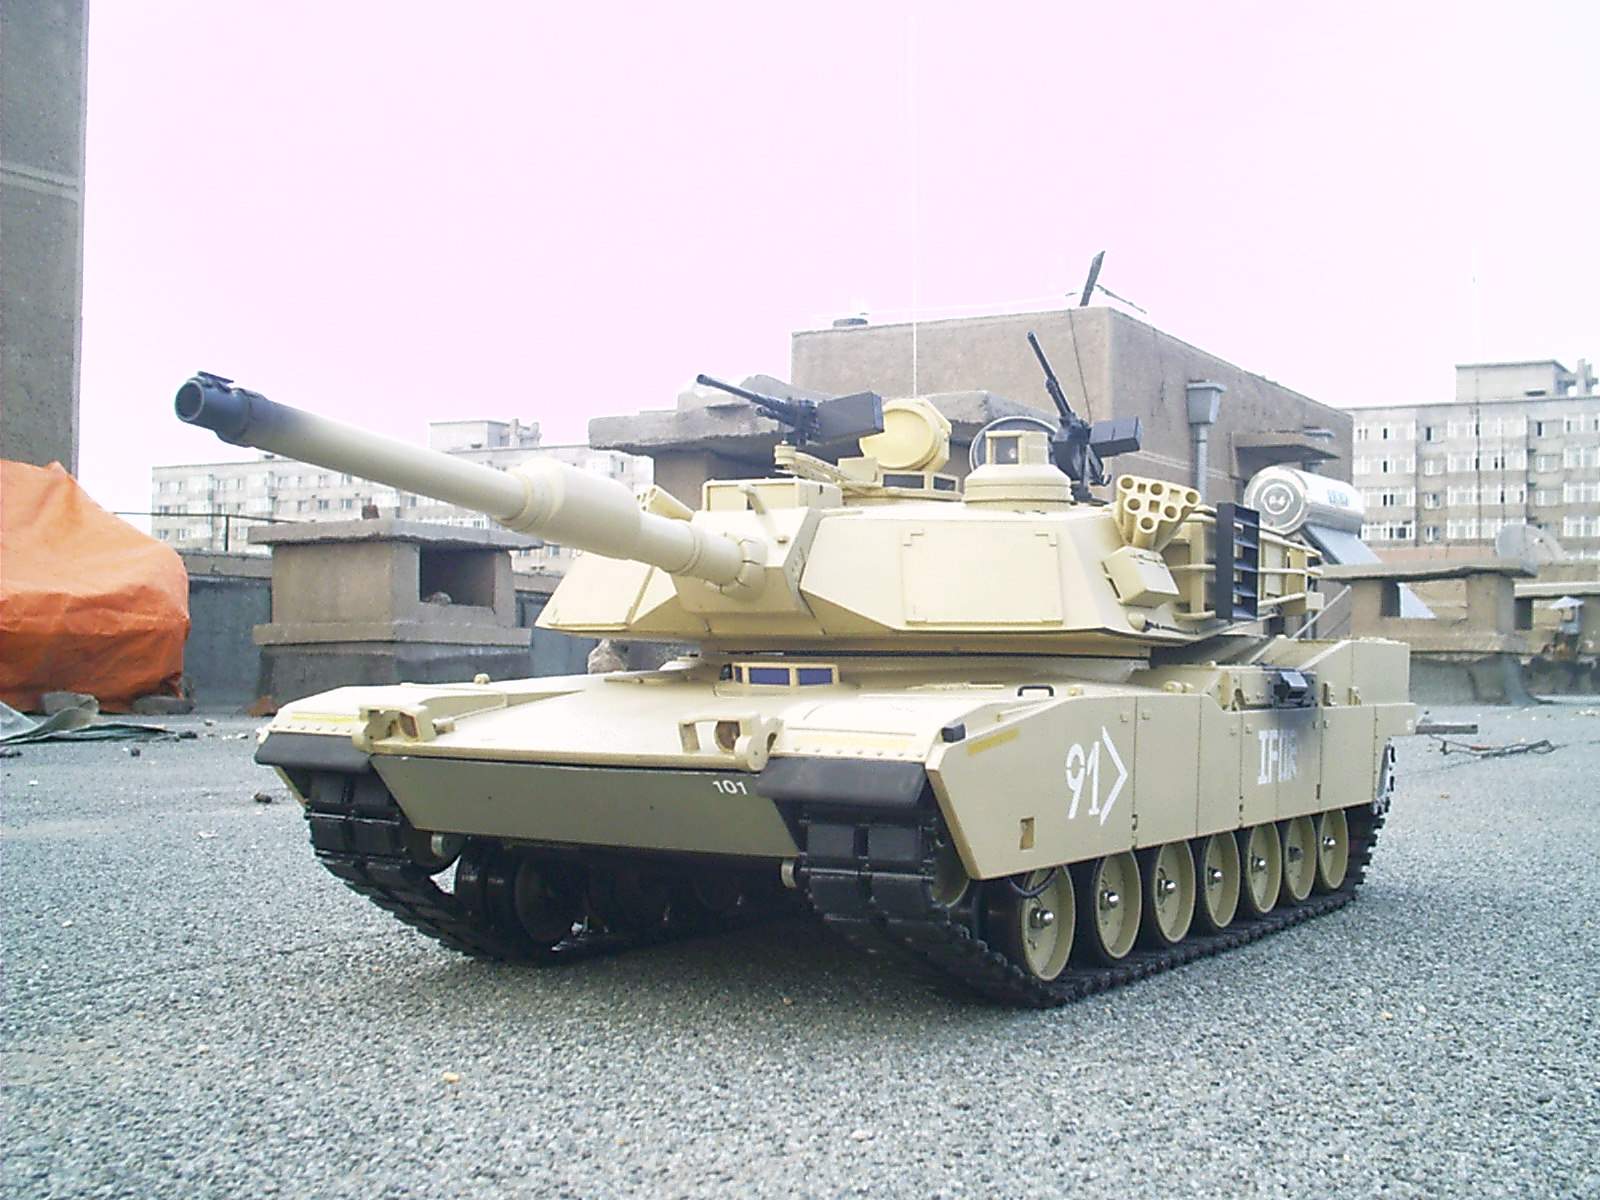 仿真坦克模型   全电动 仿真大炮模型,战车模型制作 作者:模鬼将军 6422 